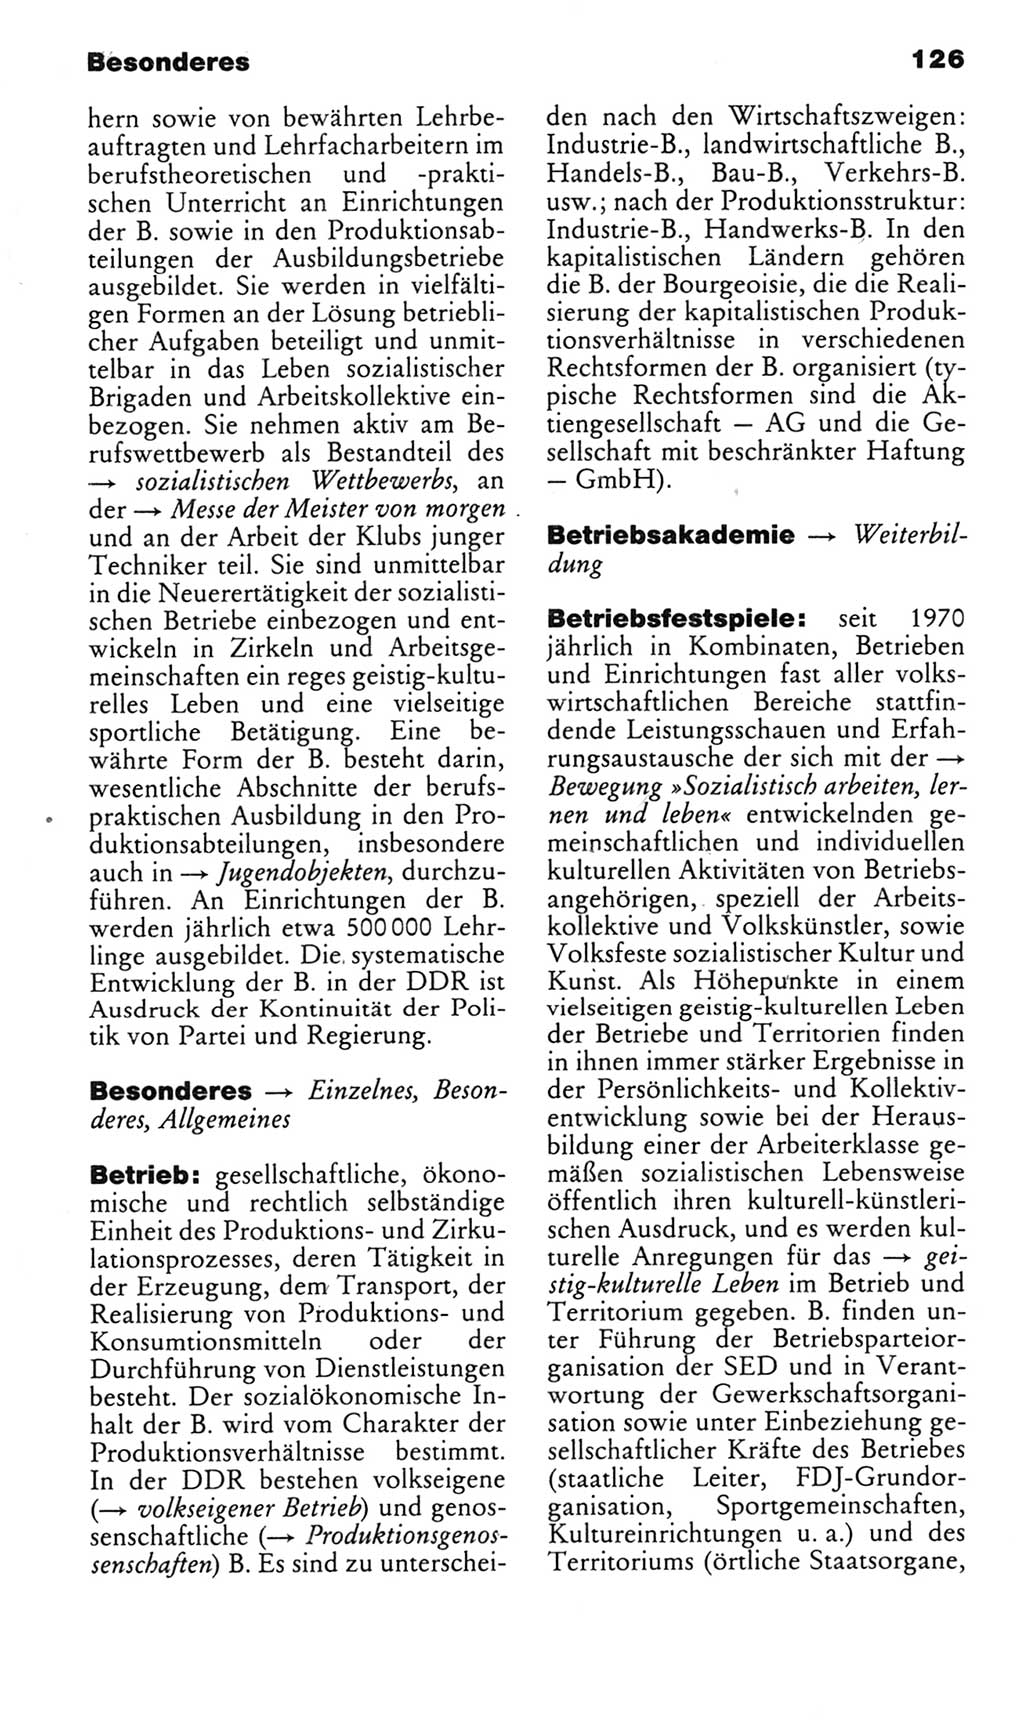 Kleines politisches Wörterbuch [Deutsche Demokratische Republik (DDR)] 1985, Seite 126 (Kl. pol. Wb. DDR 1985, S. 126)